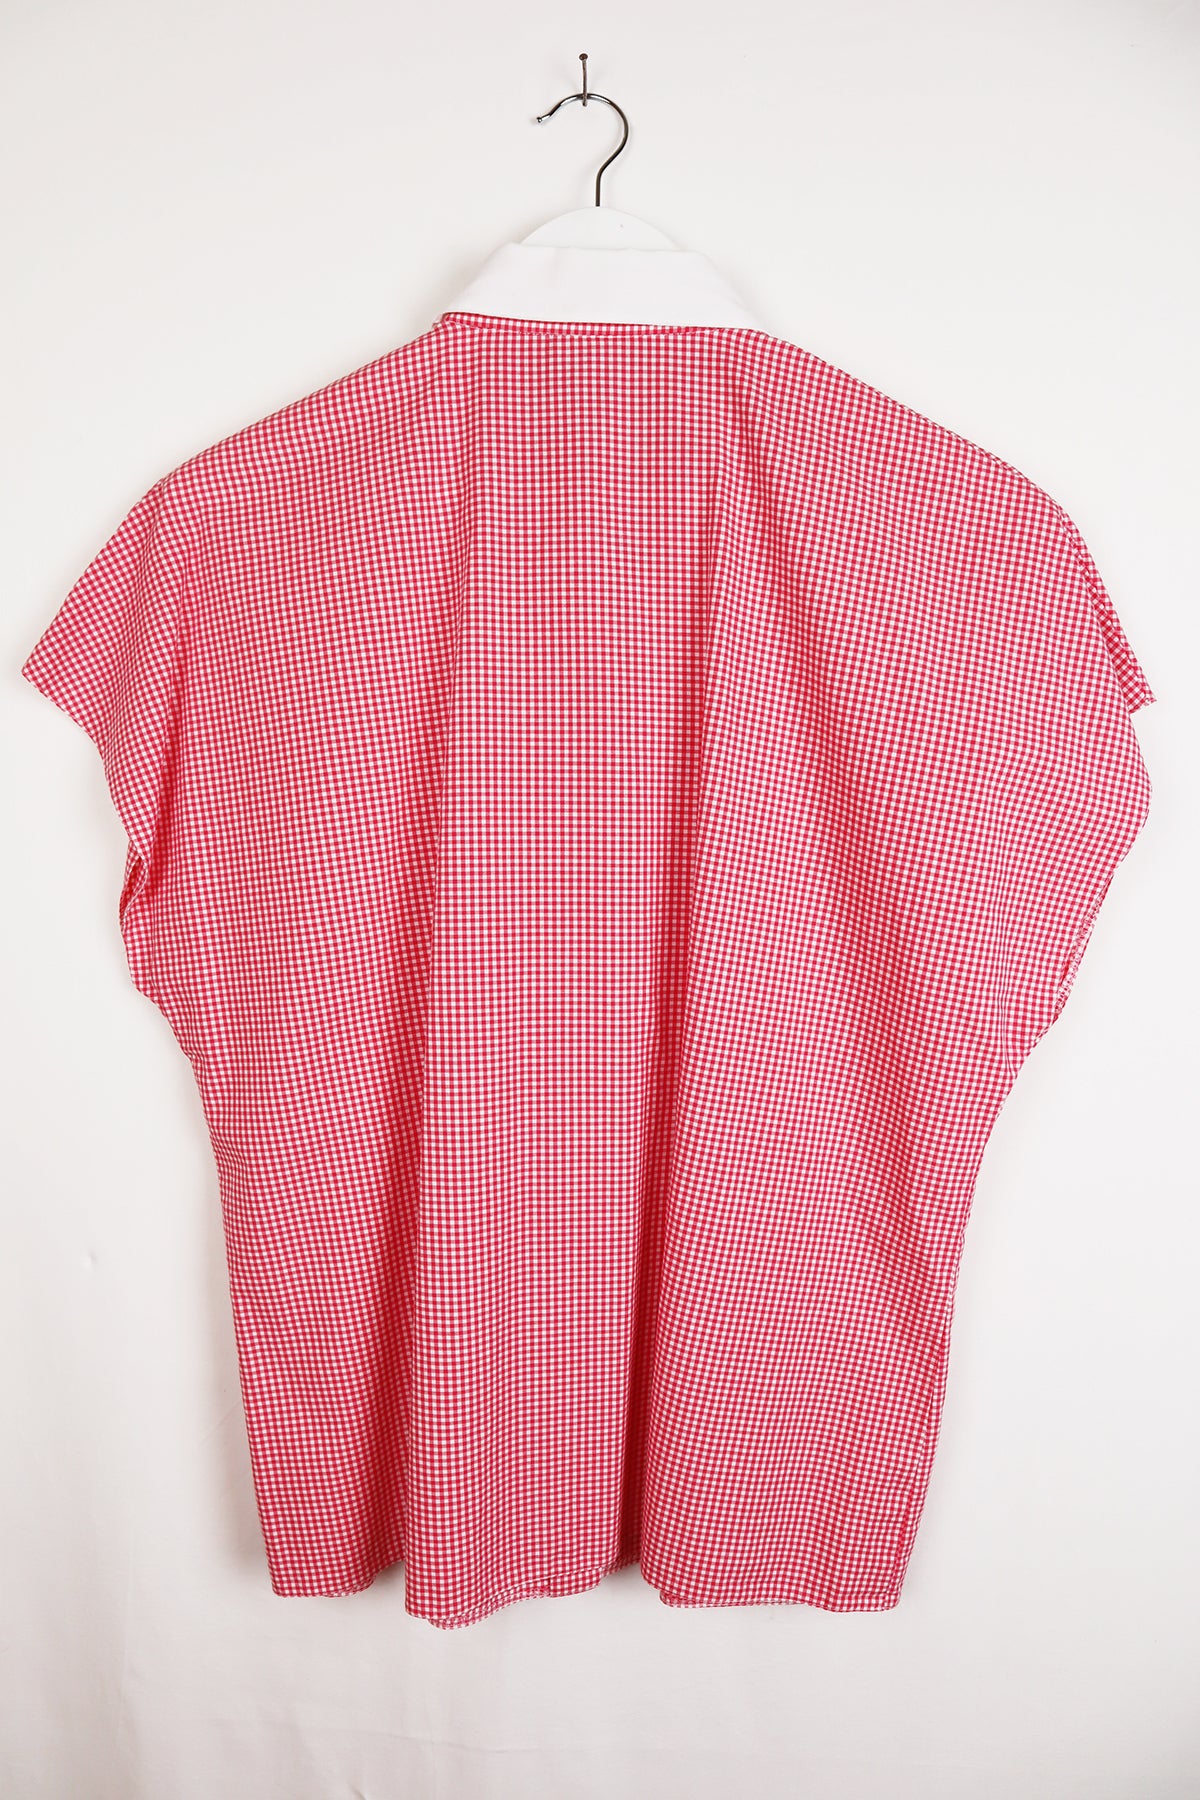 Bluse Vintage Rot Kleinkariert ( Gr. M )